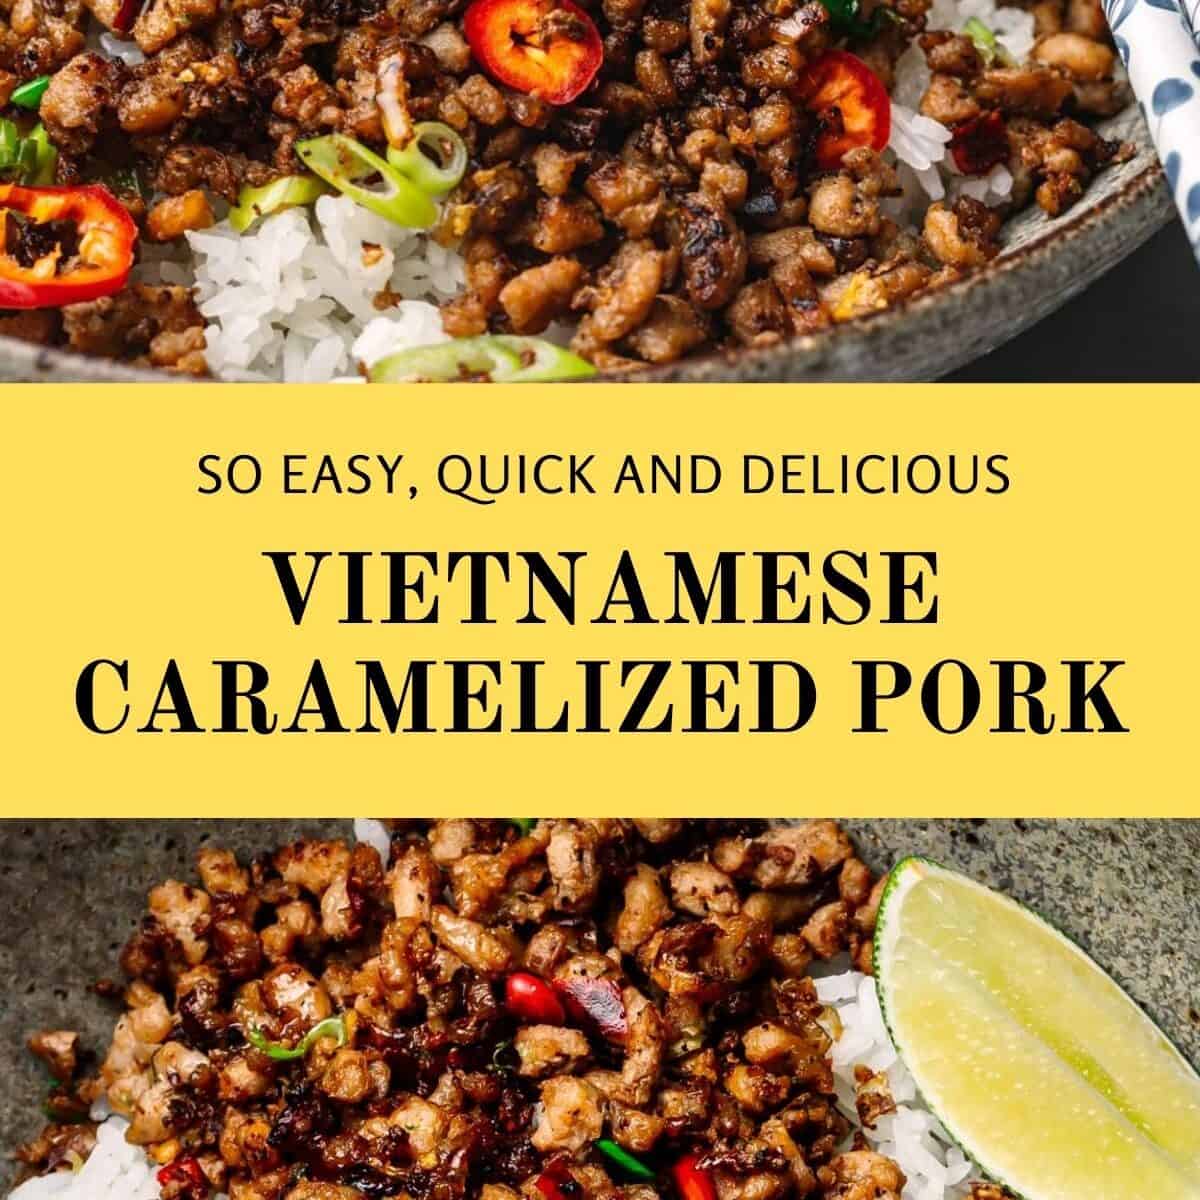 Vietnamese Caramelized Pork Bowls